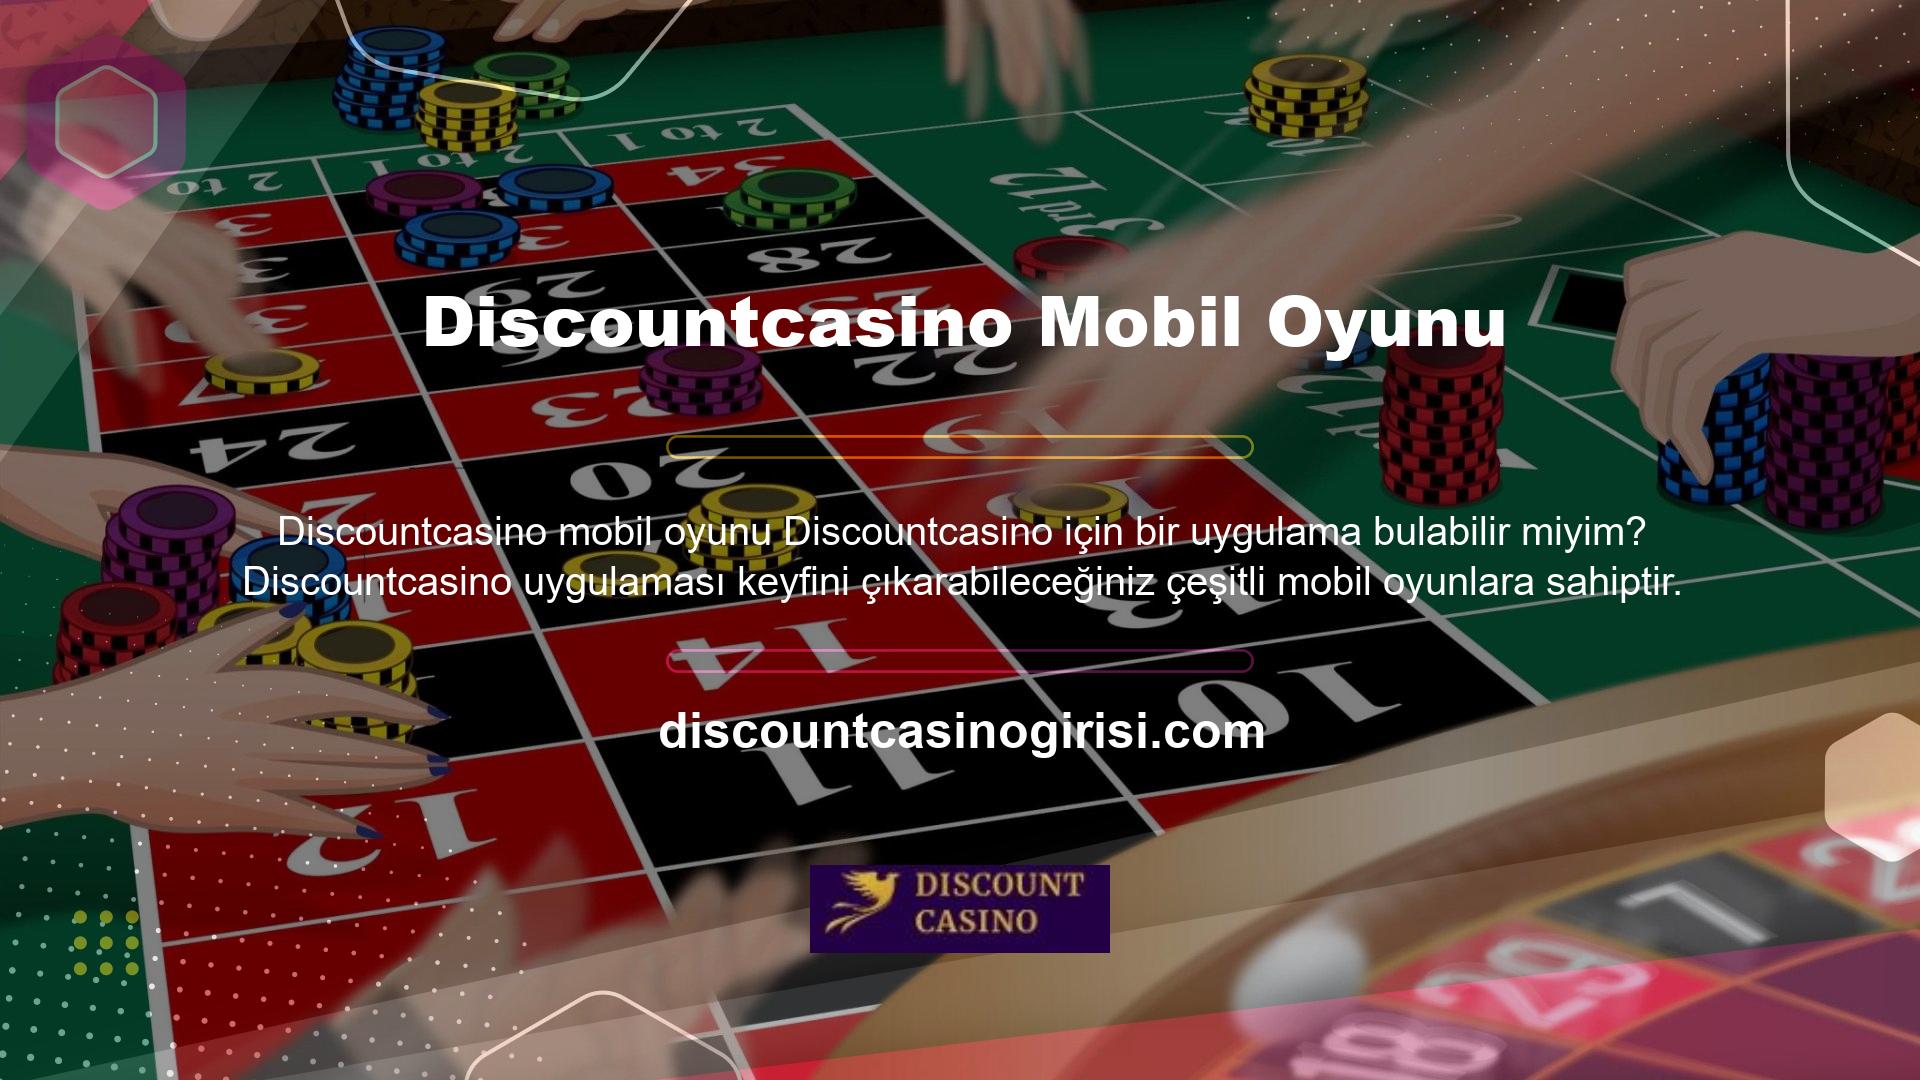 Discountcasino mobil oyunları, oyun çeşitliliğine verdikleri önemin bir kanıtıdır